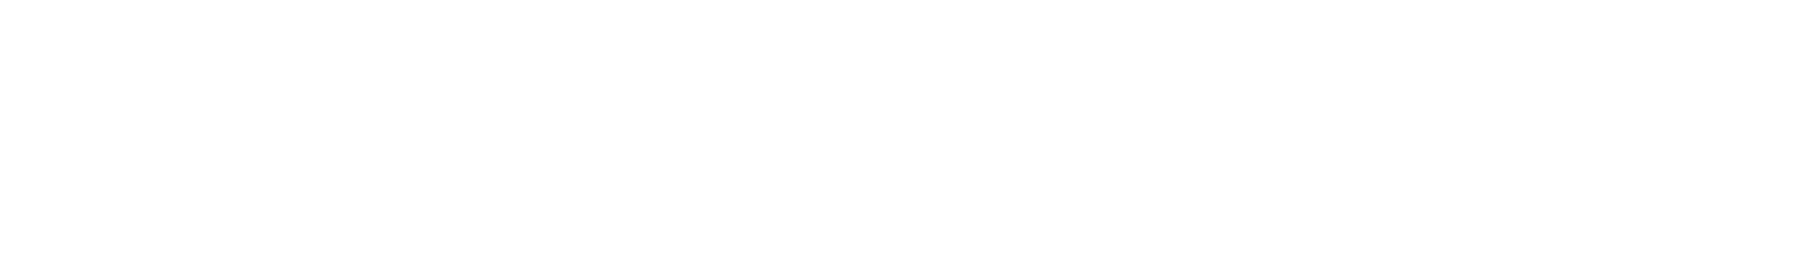 Tax Wise Tax Service Holland, MI